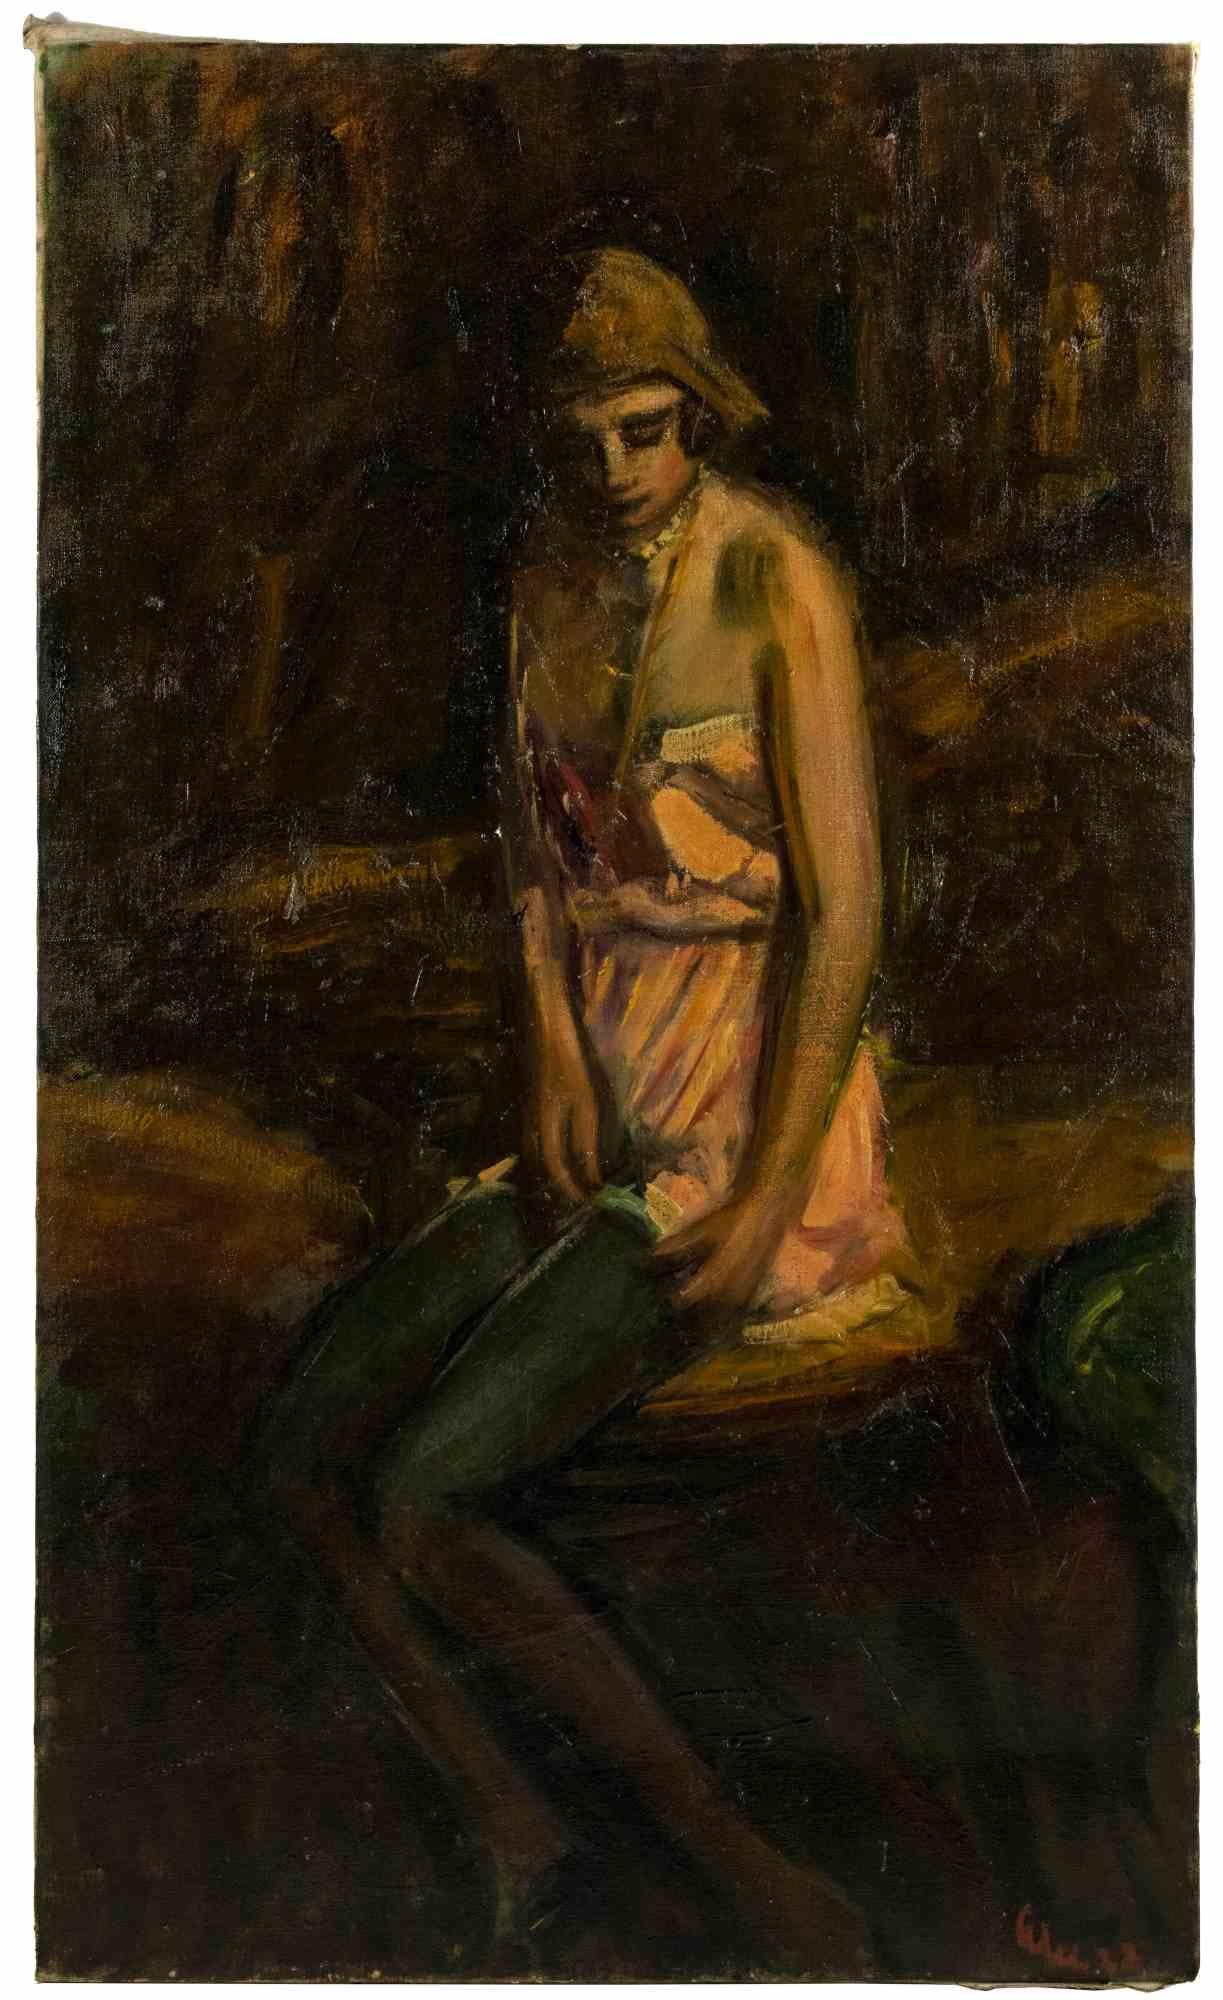 Woman est une œuvre d'art moderne originale réalisée par Antonio Feltrinelli en 1932.

Peinture à l'huile de couleurs mélangées sur toile.

Signé et daté à la main.

Bon état.

Antonio Feltrinelli (Milan, 1887 - Gargnano, 1942)
Il est né à Milan le